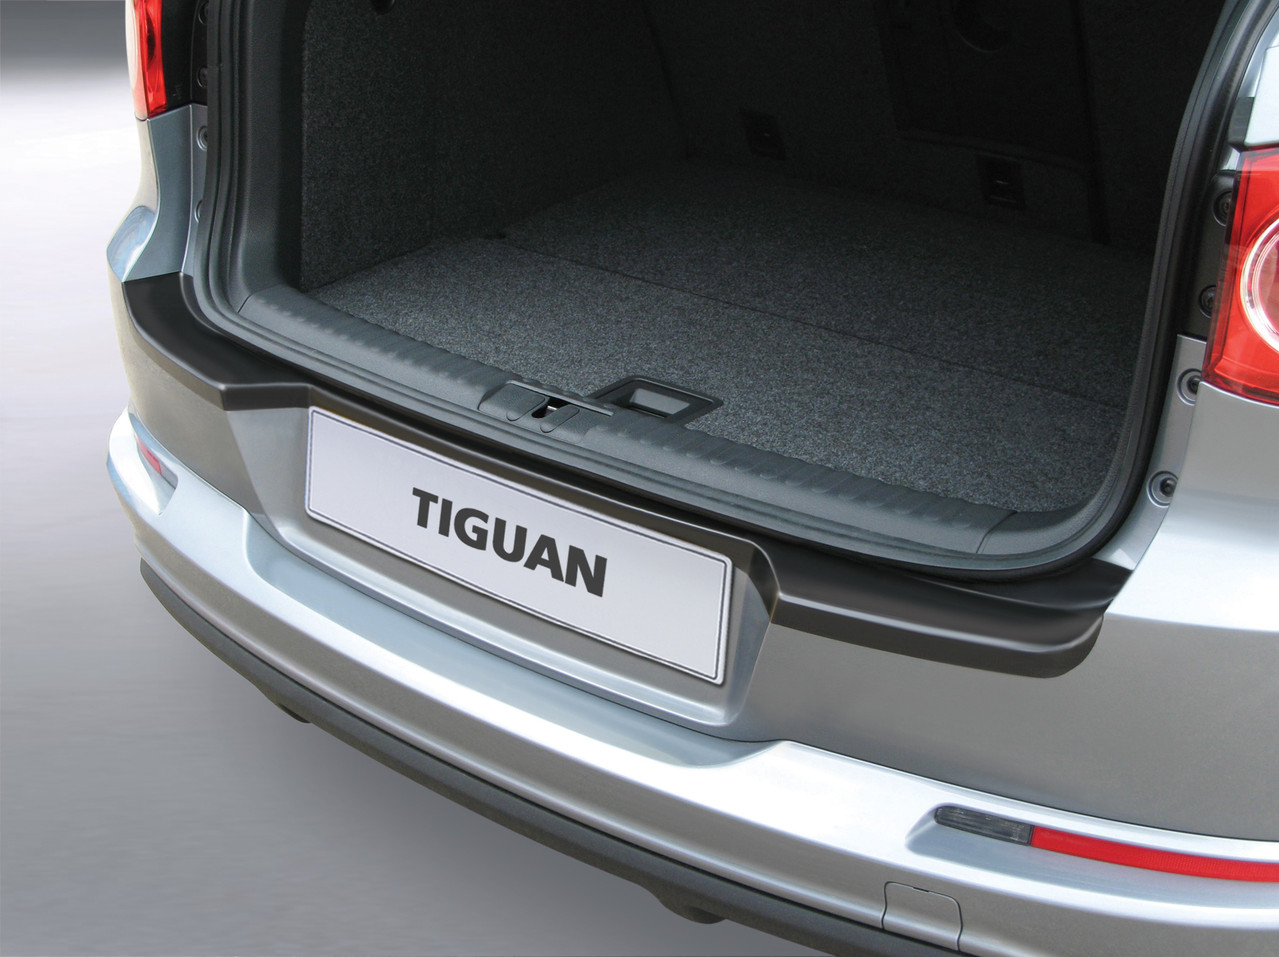 Ladekantenschutz für VW TIGUAN - Schutz für die Ladekante Ihres Fahrzeuges | Abdeckblenden